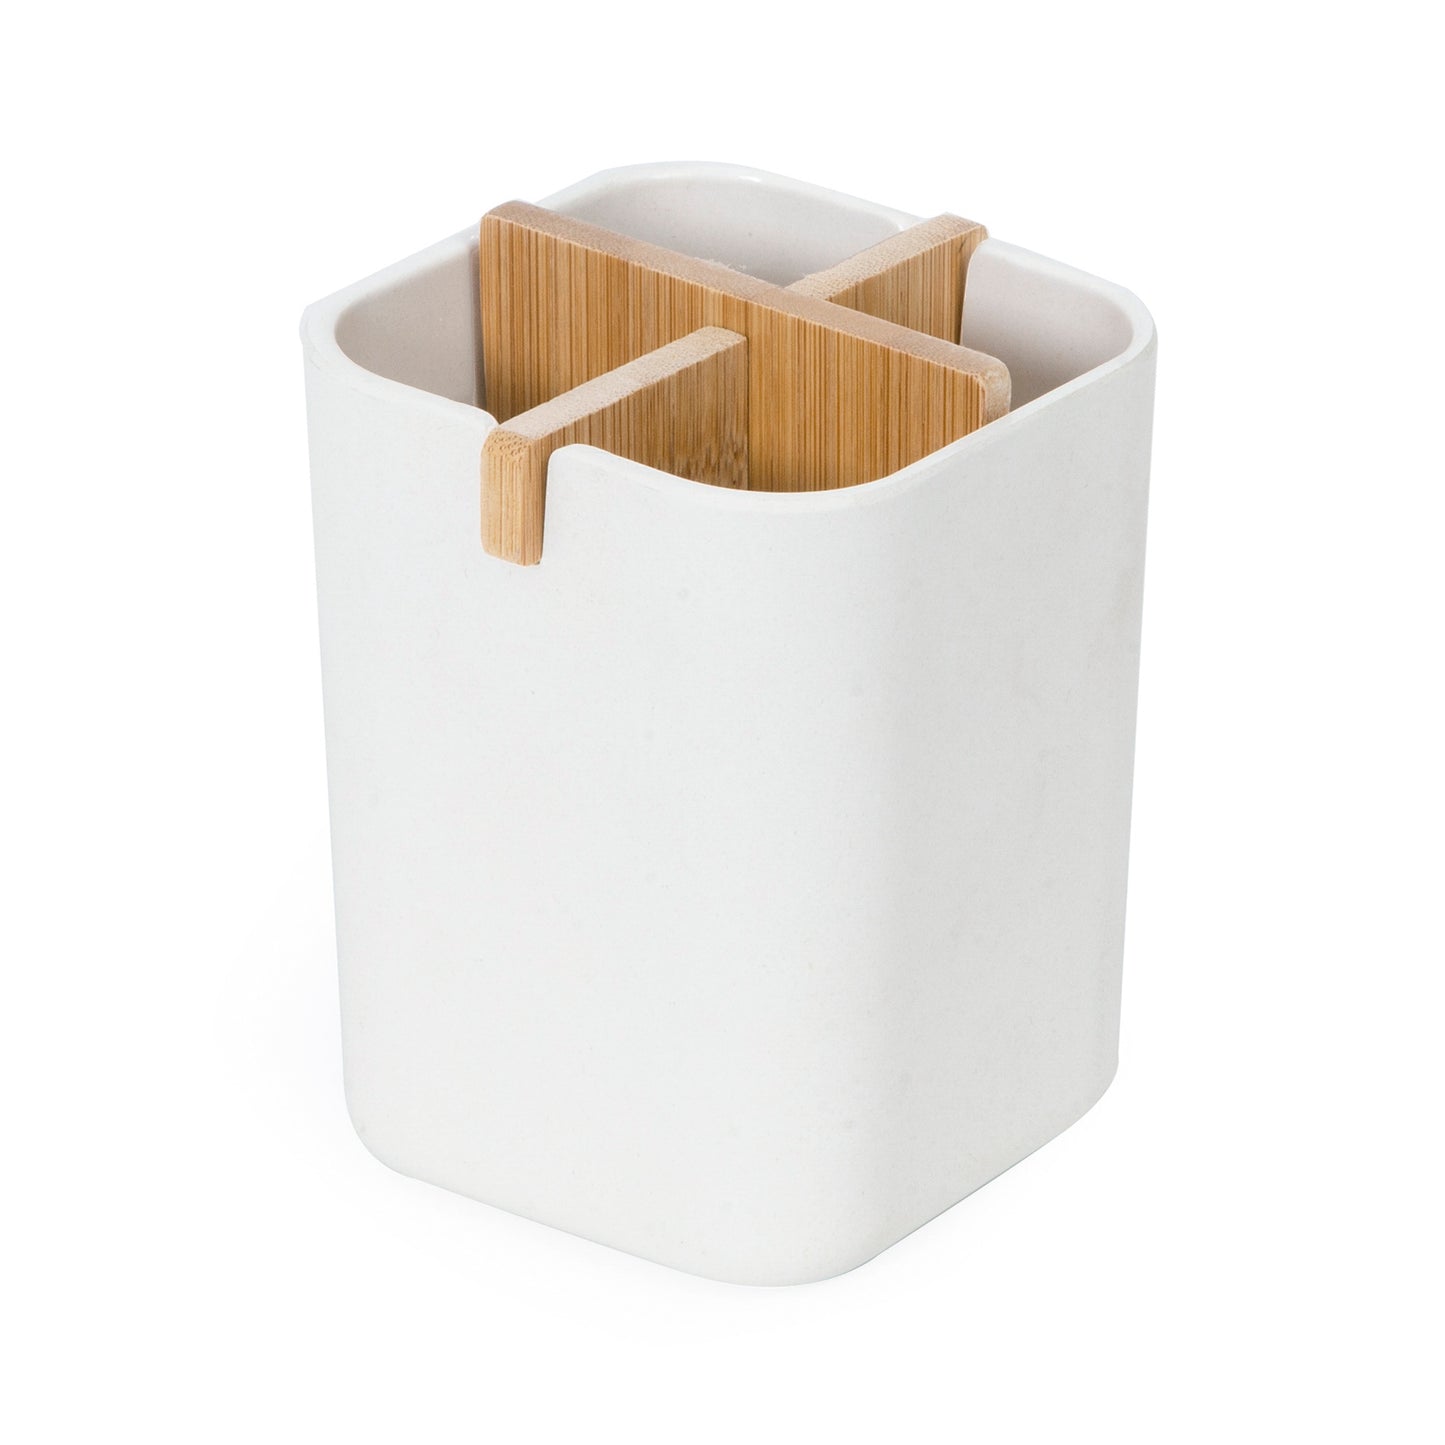 Boîte de rangement compartimentée en bambou et fibre de bambou Ecologik blanche